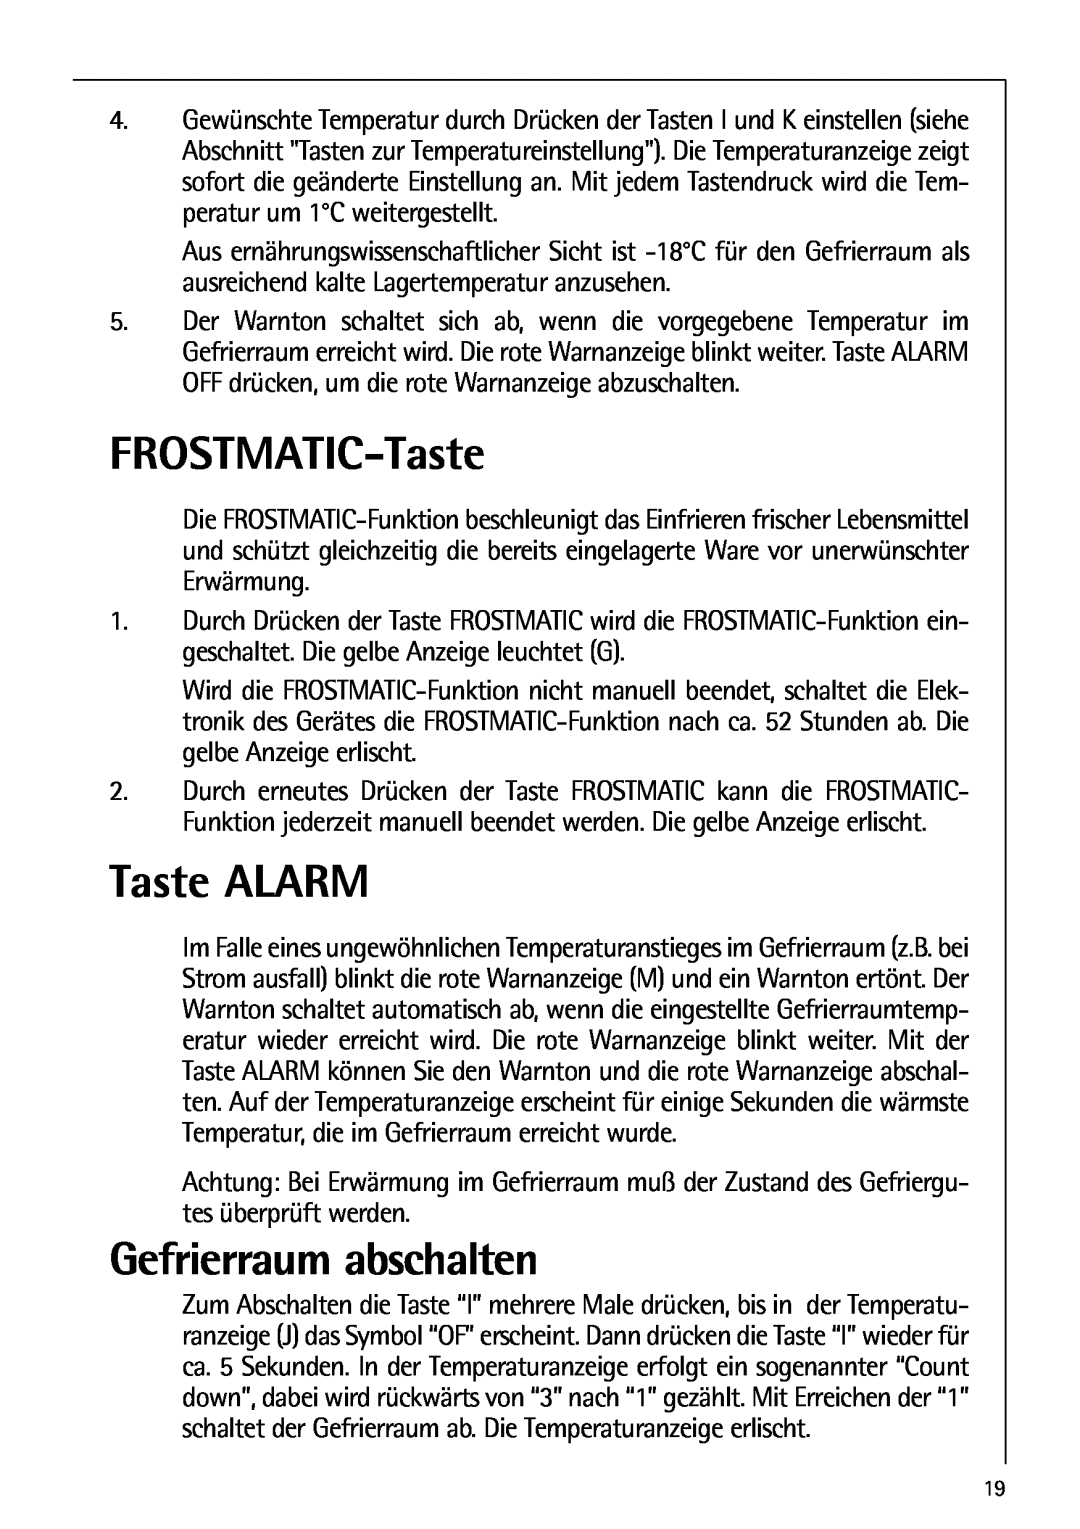 AEG 80318-5 KG user manual FROSTMATIC-Taste, Taste ALARM, Gefrierraum abschalten 